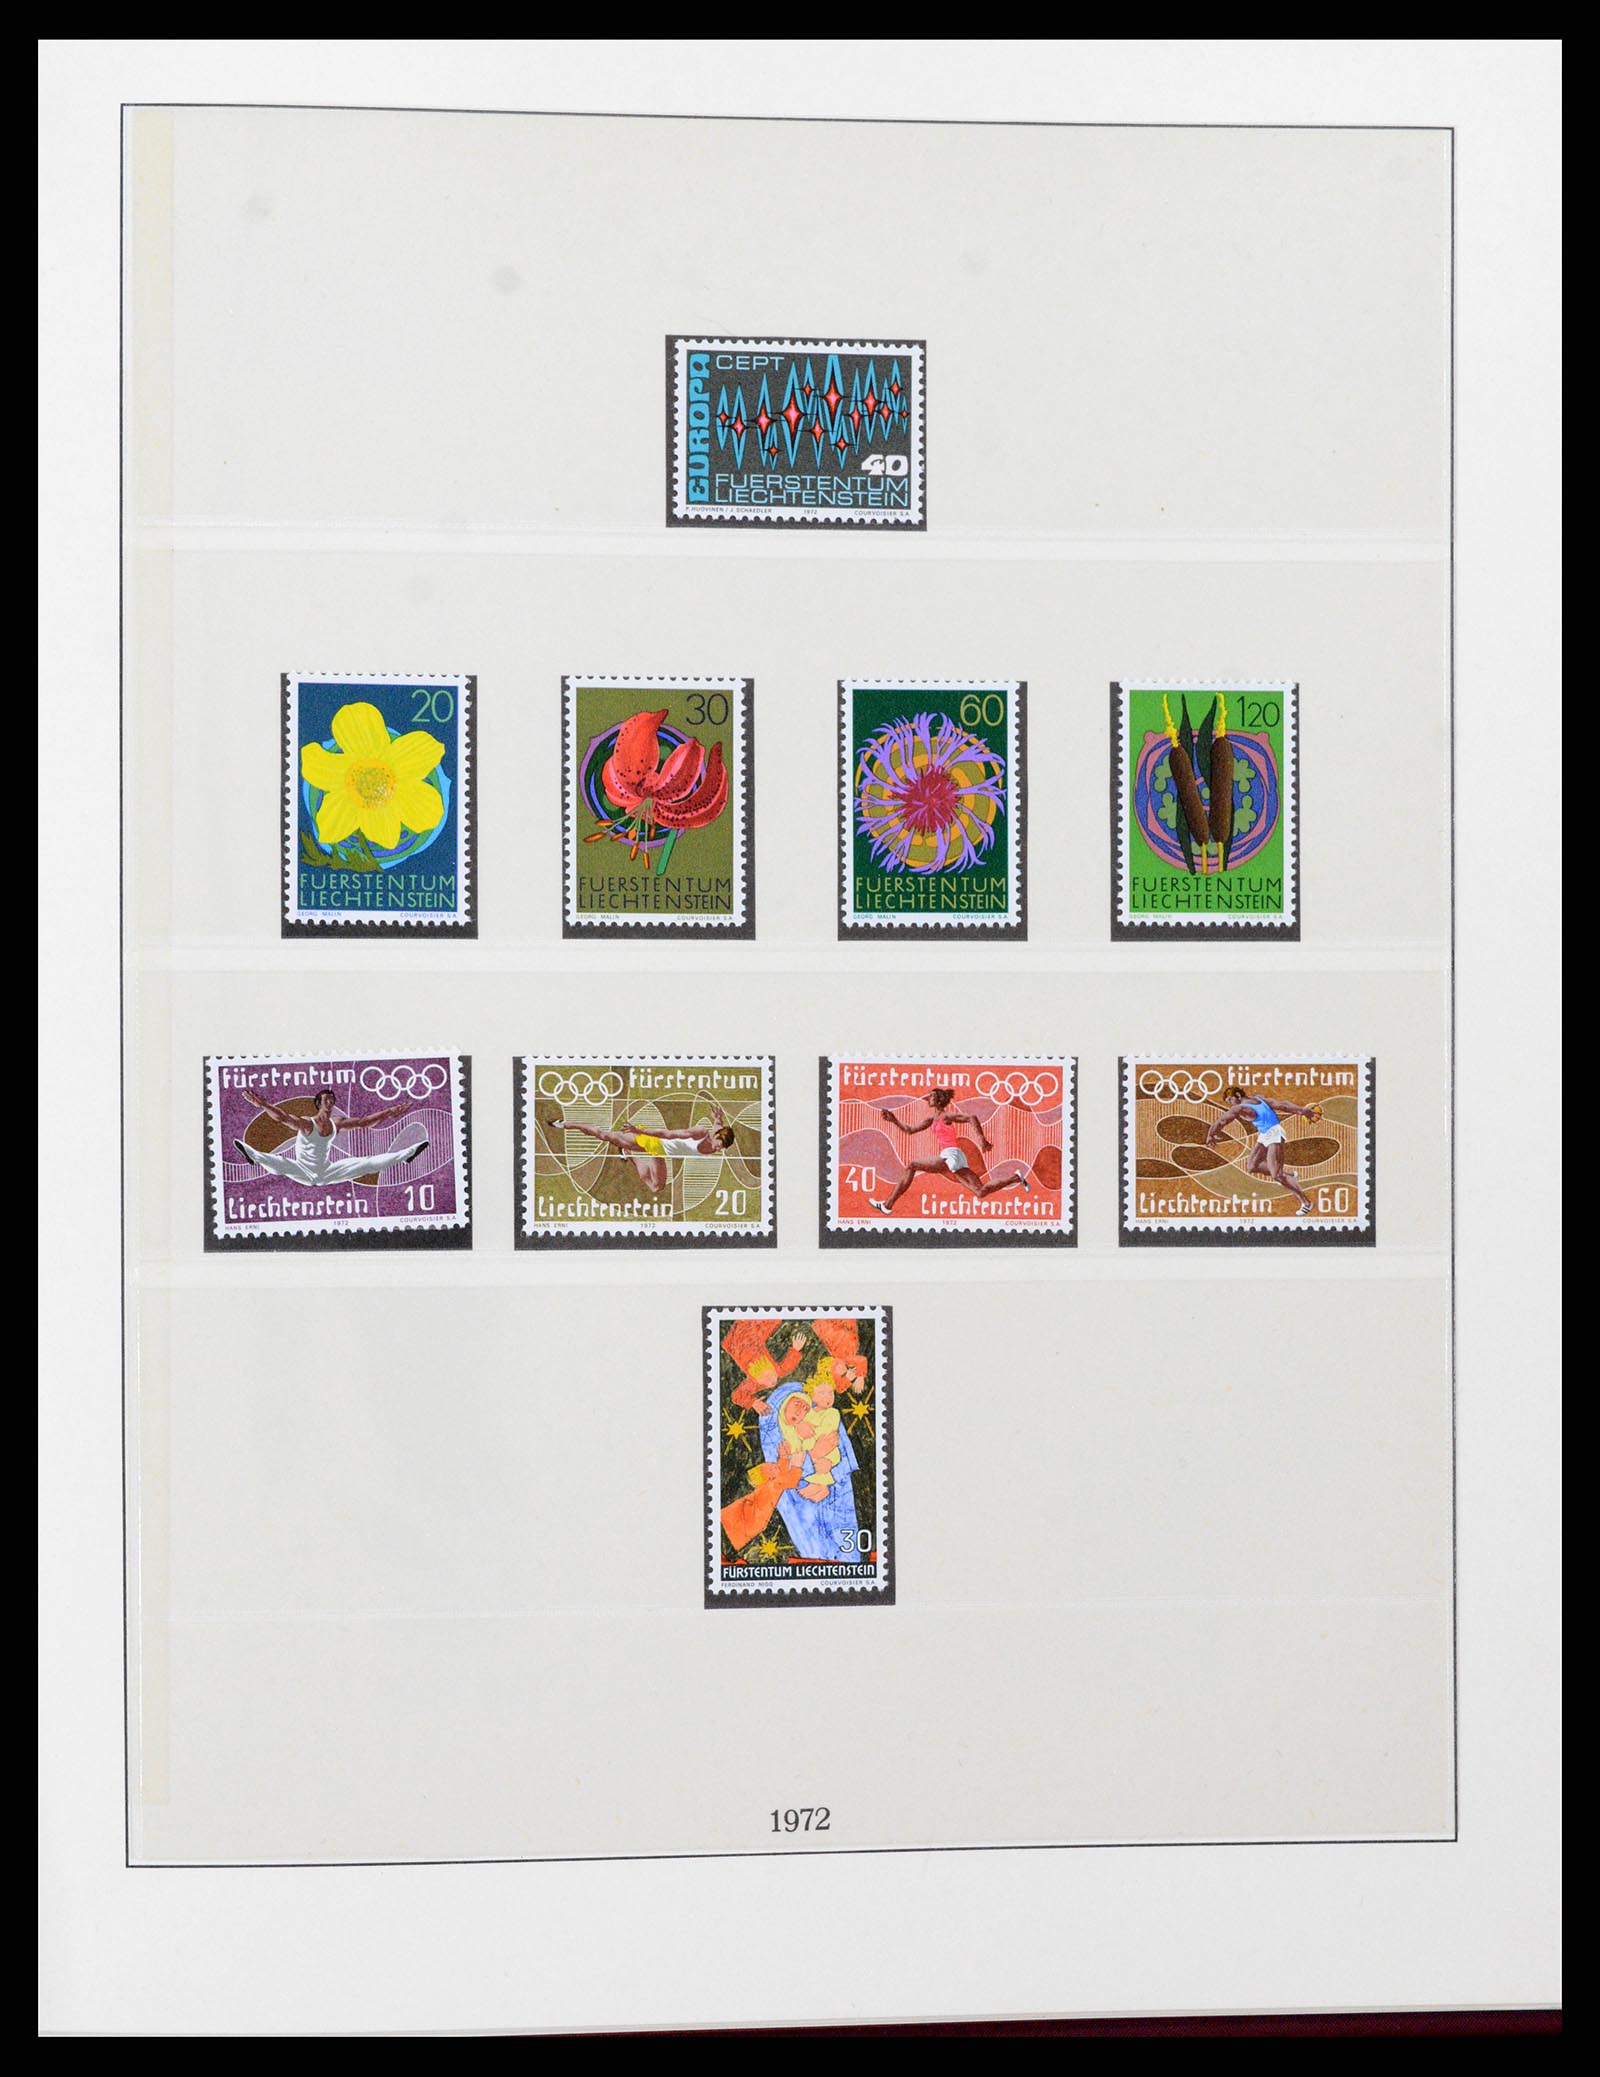 37293 051 - Stamp collection 37293 Liechtenstein 1912-2003.